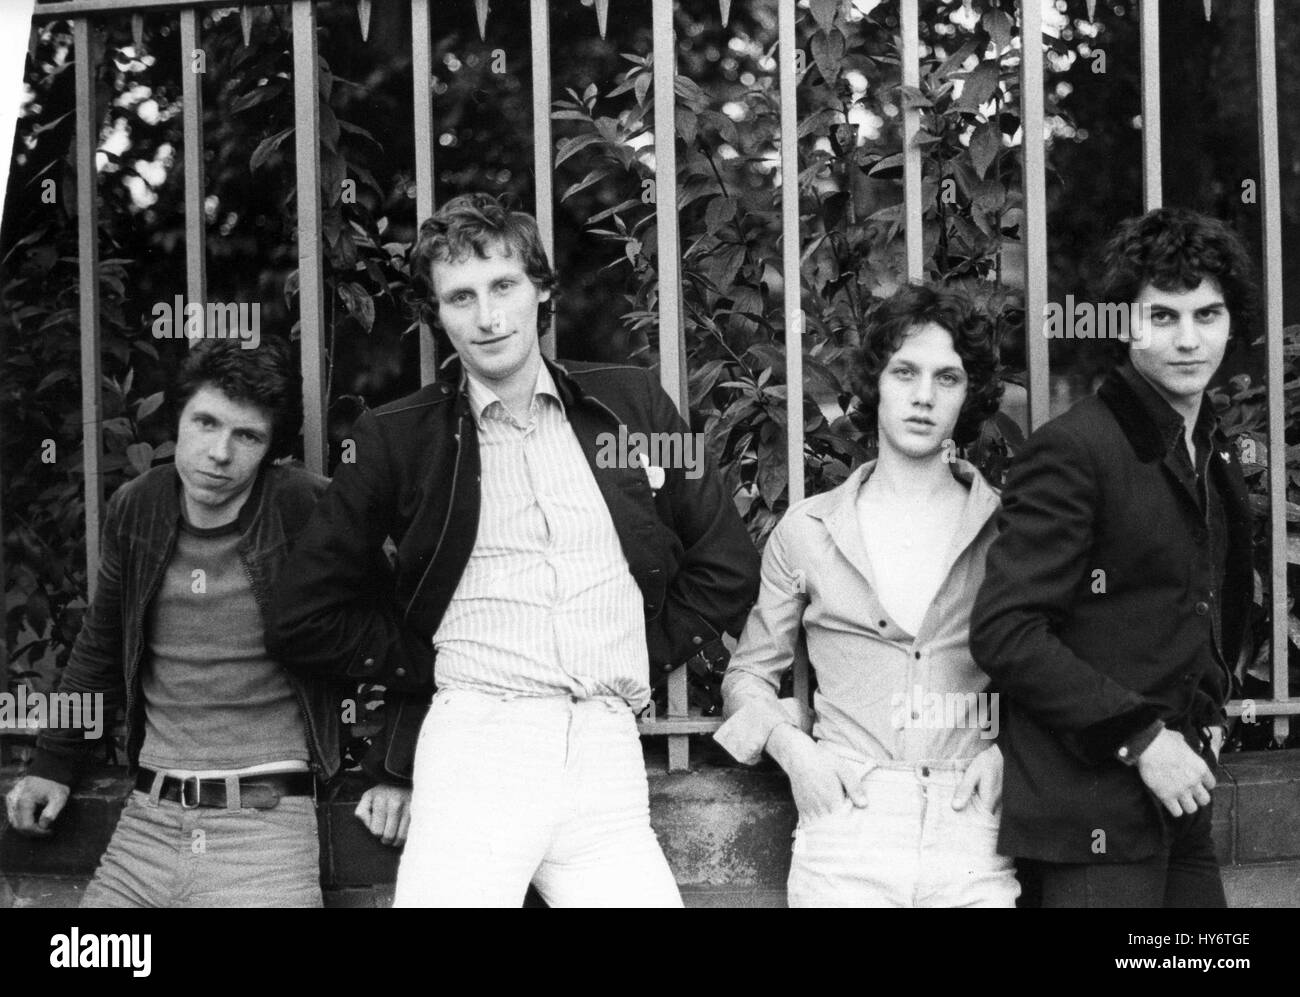 Le groupe power pop britannique présentent de petits amis avant une performance live à Londres, Angleterre le 20 août 1978. L-R Chris Skornia, Patrick Collier, Steve Bray, Mark Henry. Banque D'Images